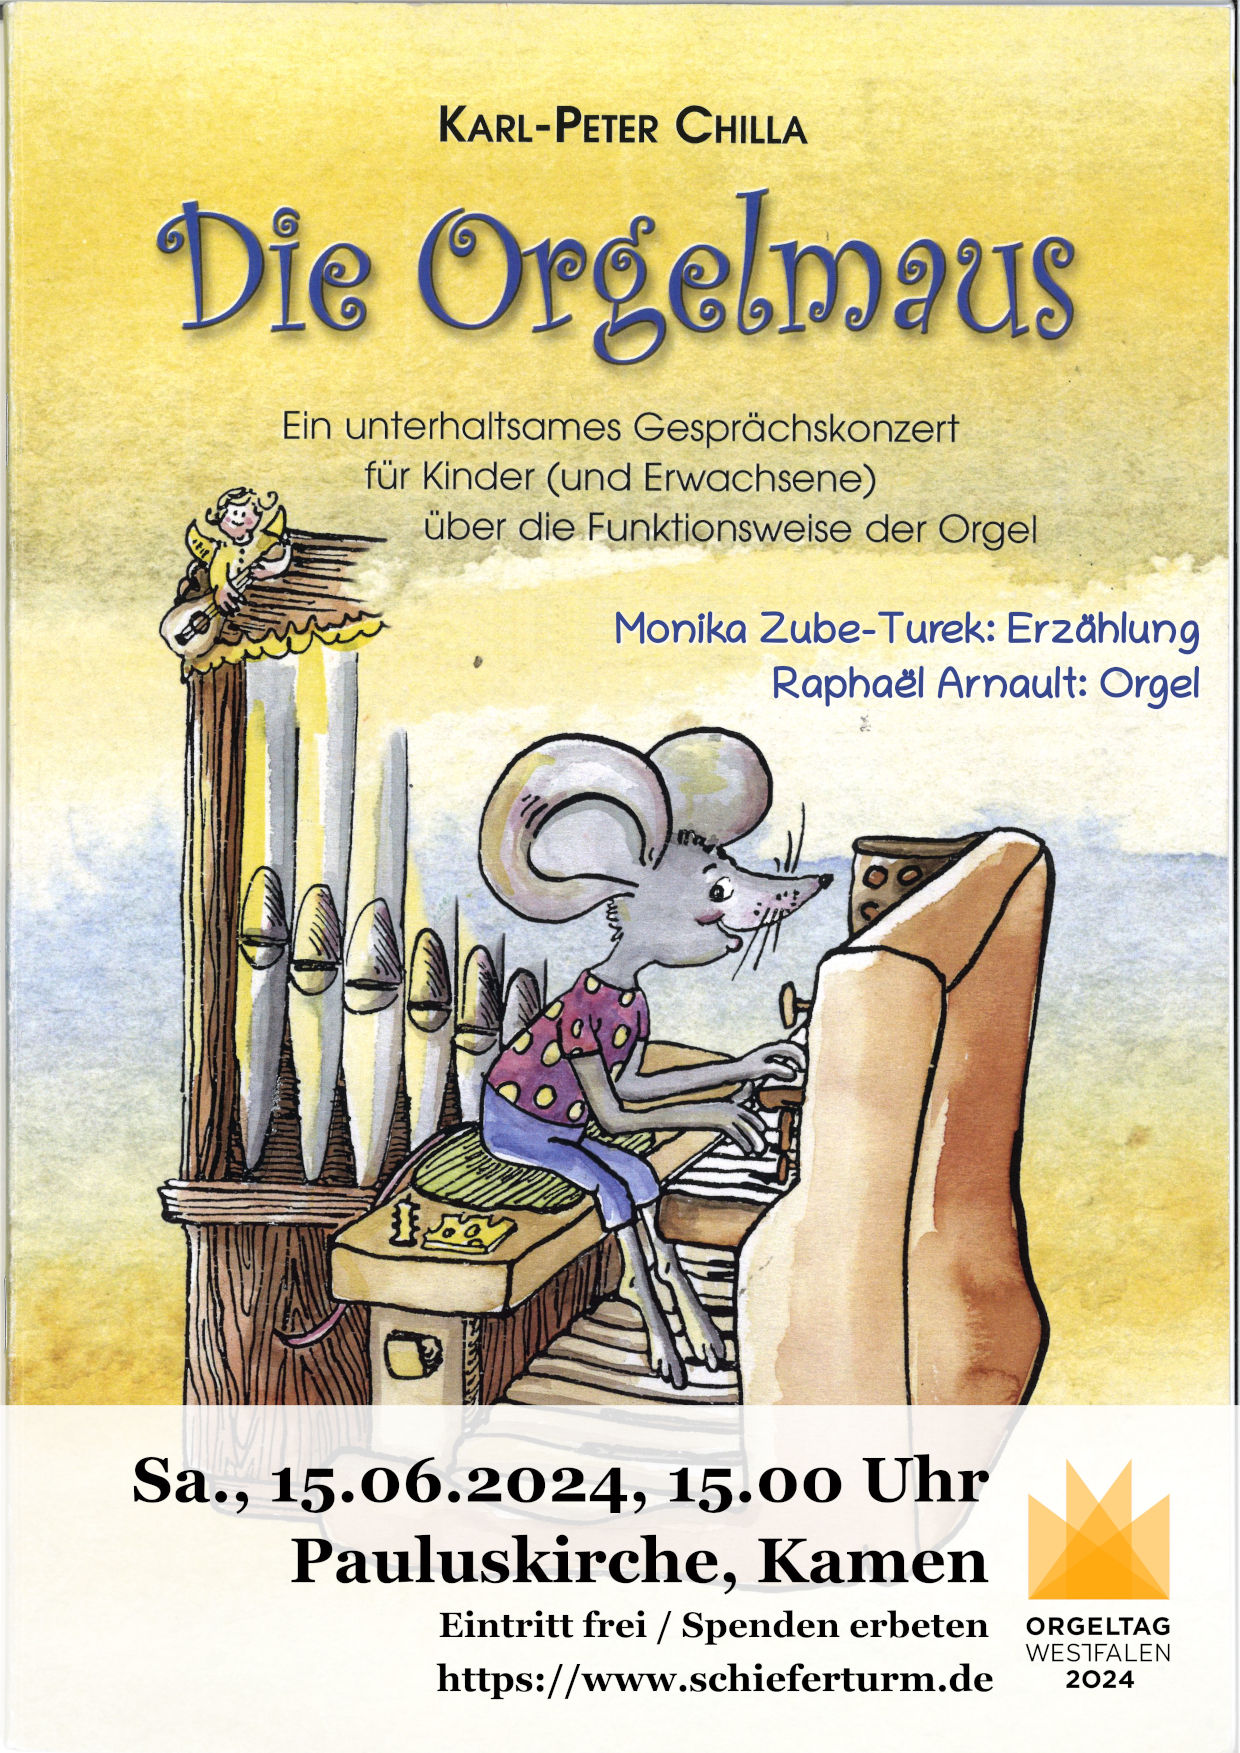 Orgeltag Westfalen: Kinderorgelkonzert